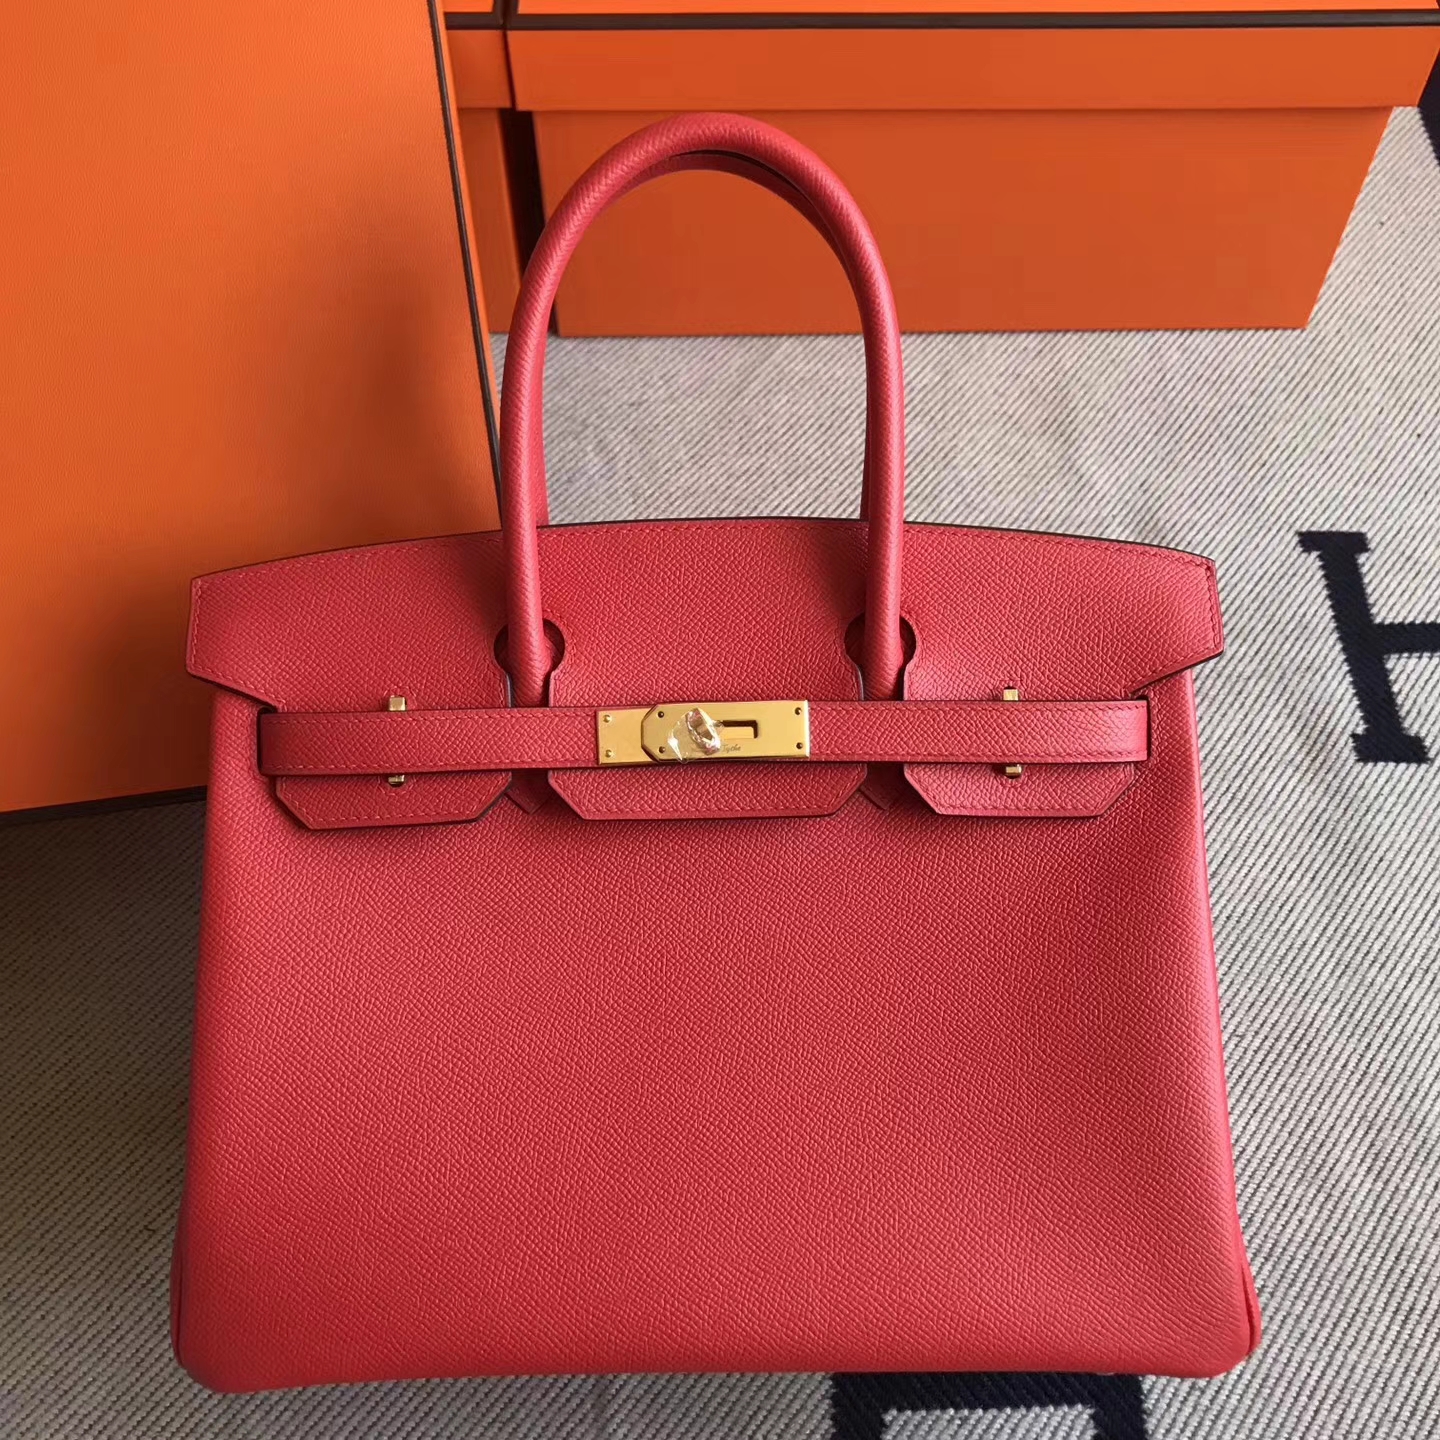 New Arrival Hermes S5 Tomato Red Epsom Leather Birkin30cm Handbag ...